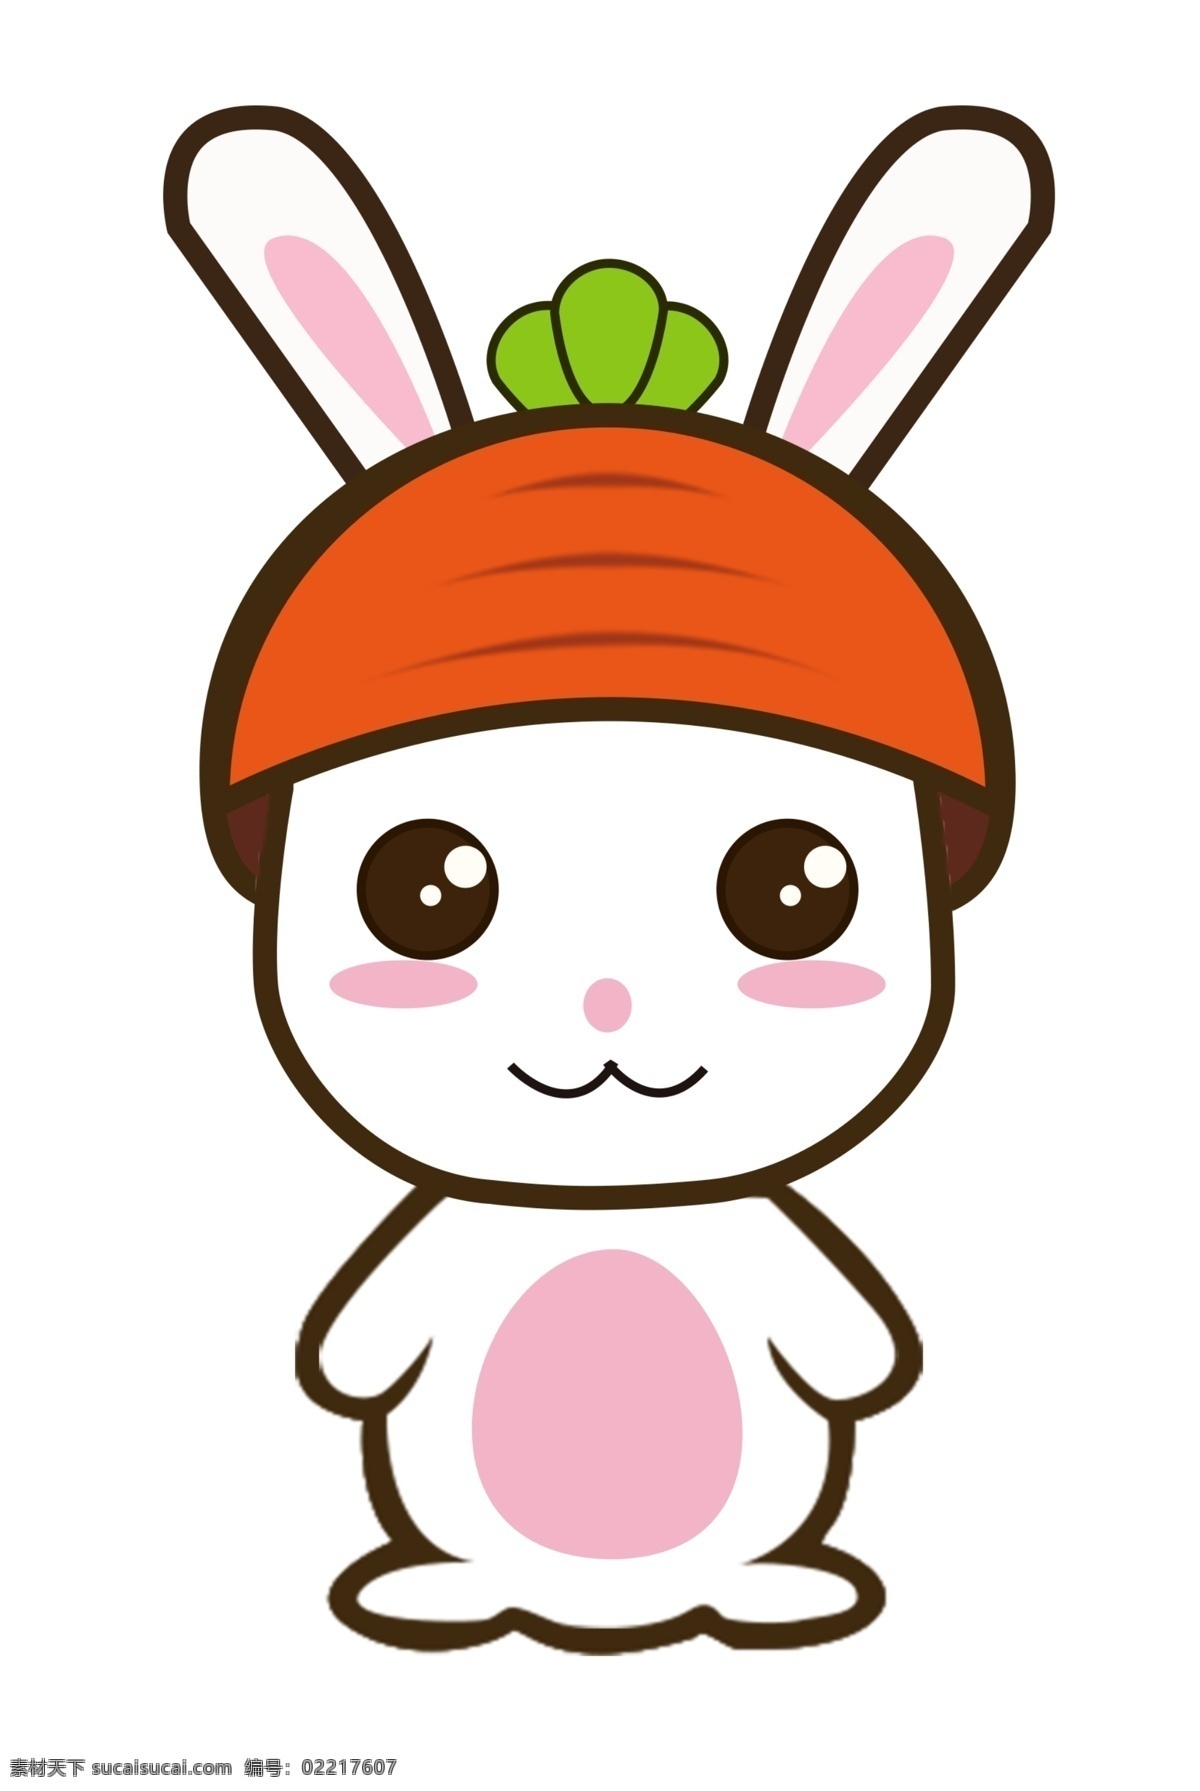 可爱 的卡 通 兔子 卡通兔子 卡通兔 卡通可爱兔子 卡通动物 卡通小白兔 免抠兔子 印刷 手机壳 兔子插画 矢量兔子 童装印花 分层